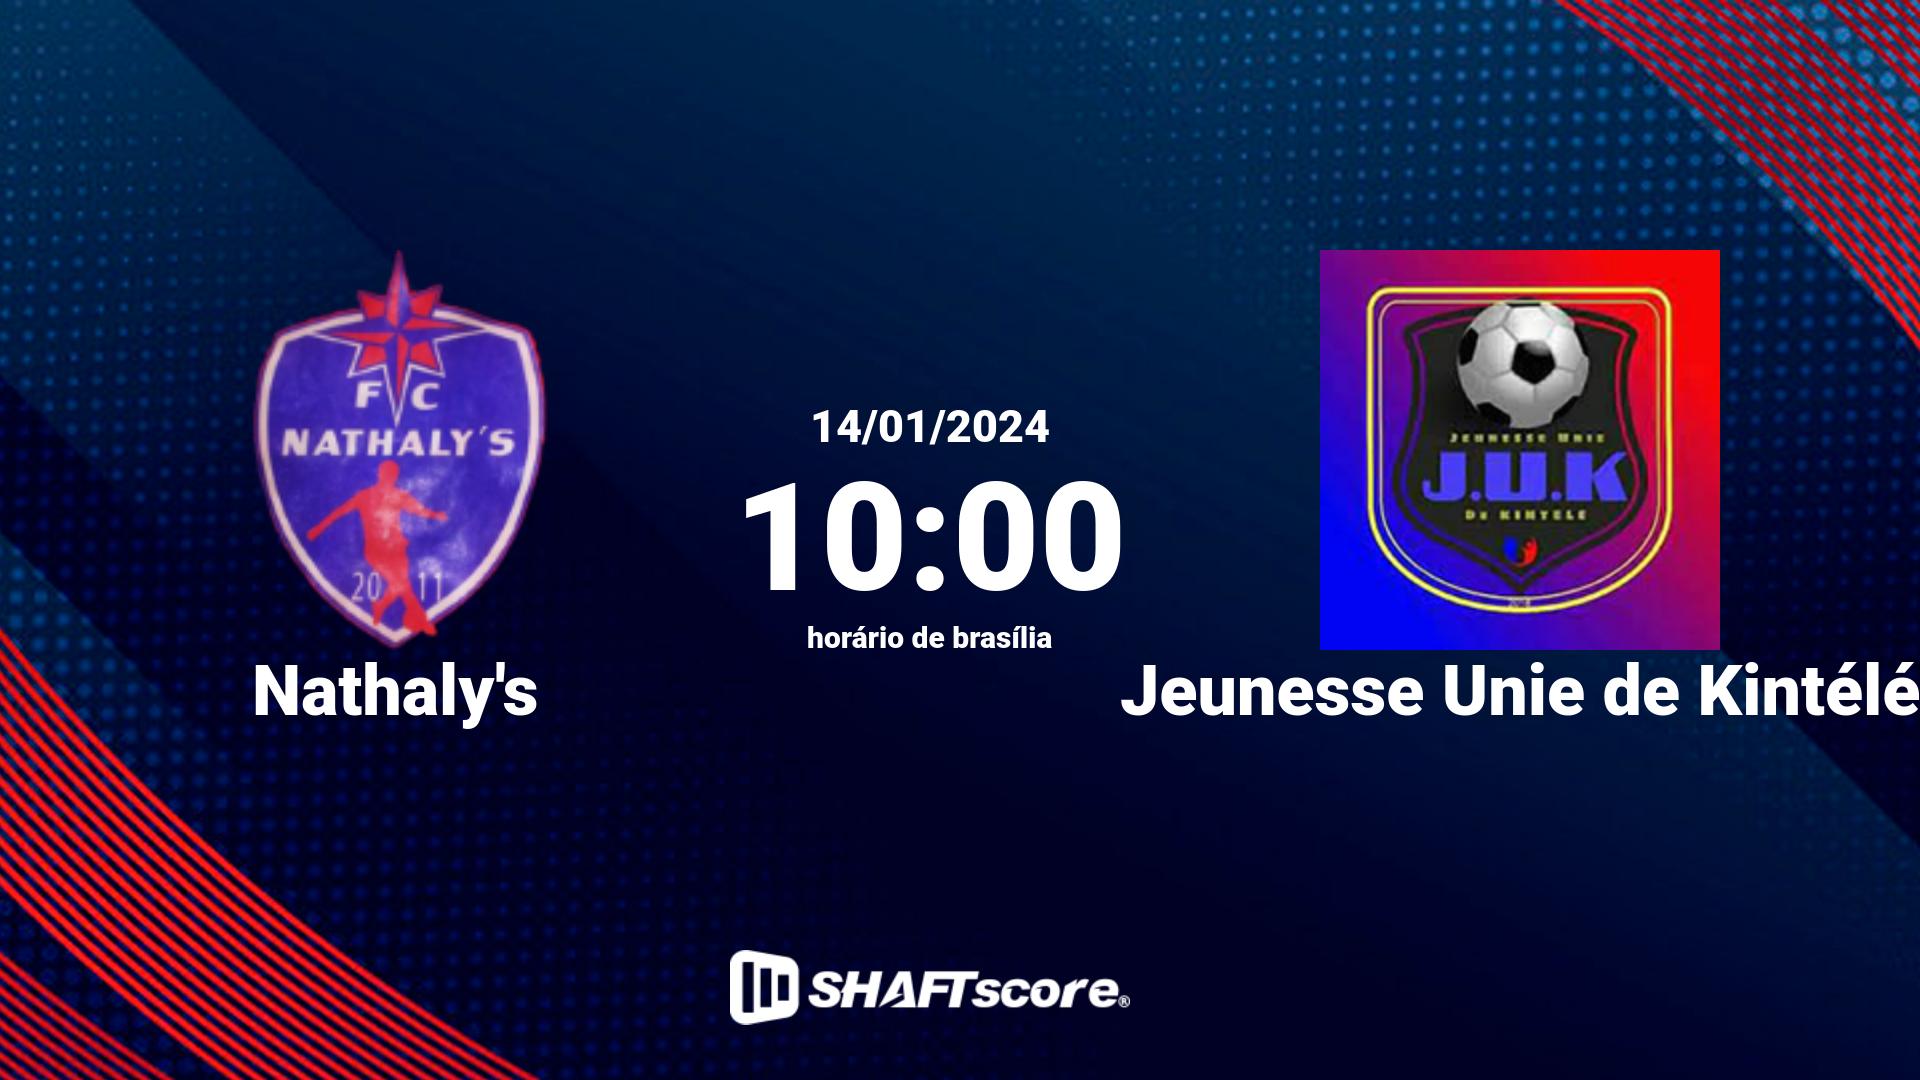 Estatísticas do jogo Nathaly's vs Jeunesse Unie de Kintélé 14.01 10:00